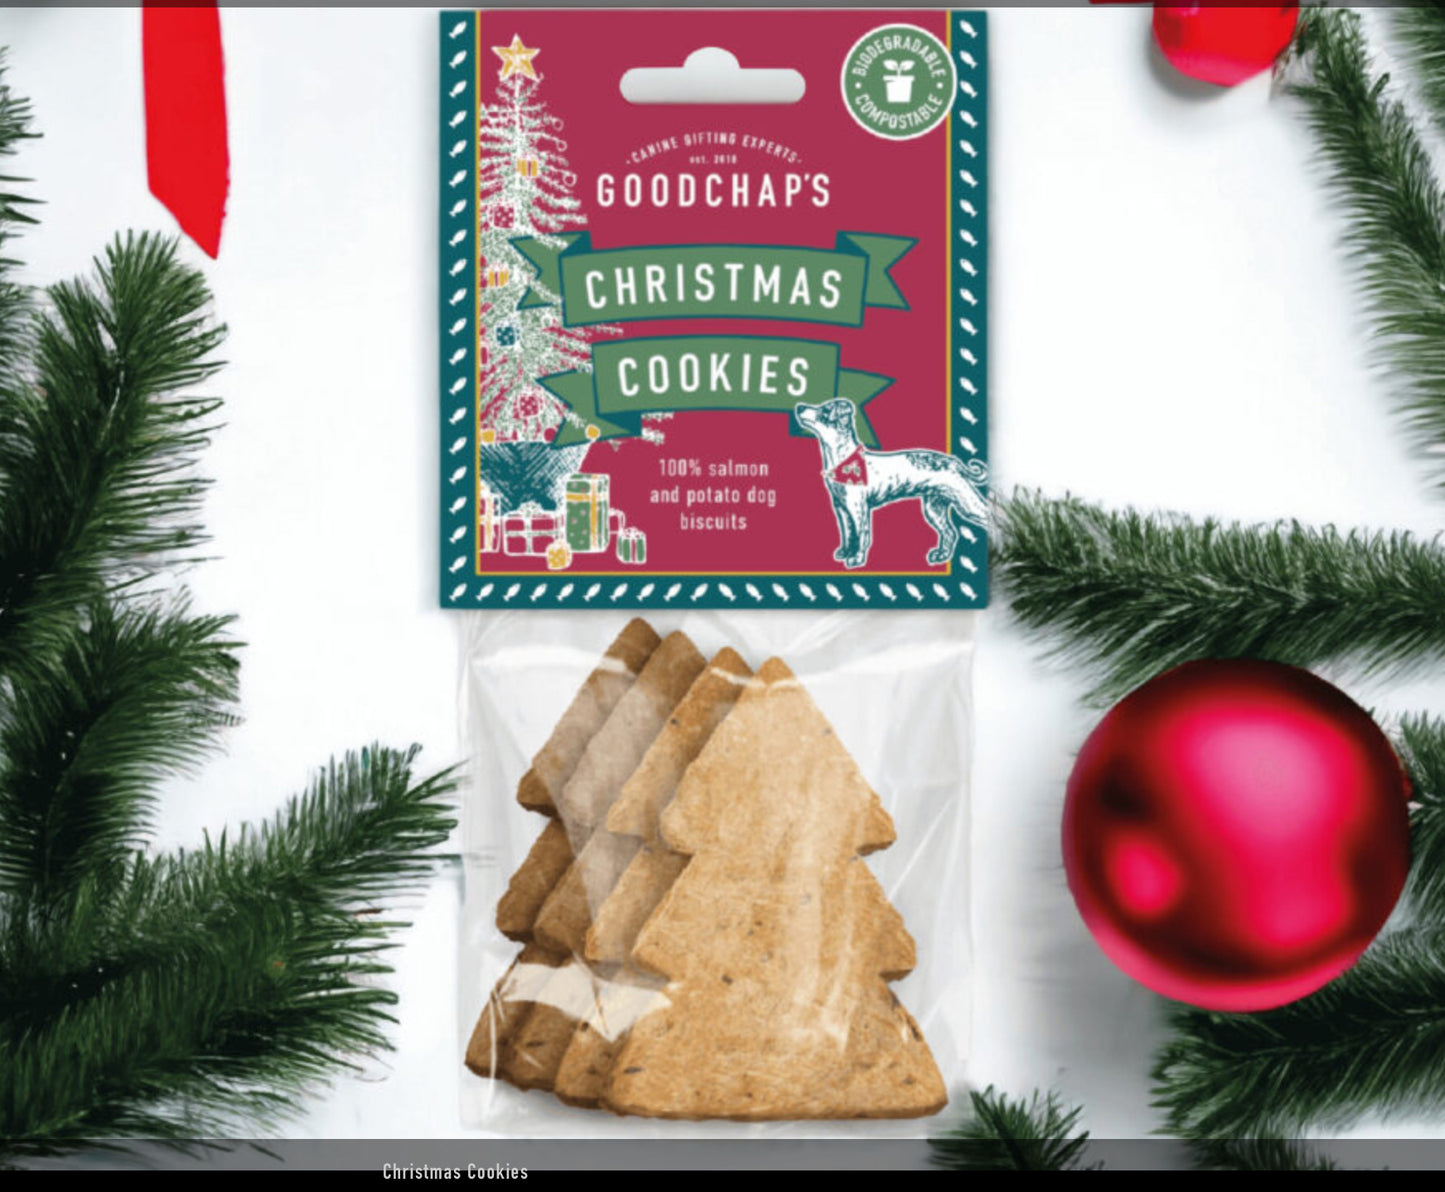 Goodchaps Christmas Cookies